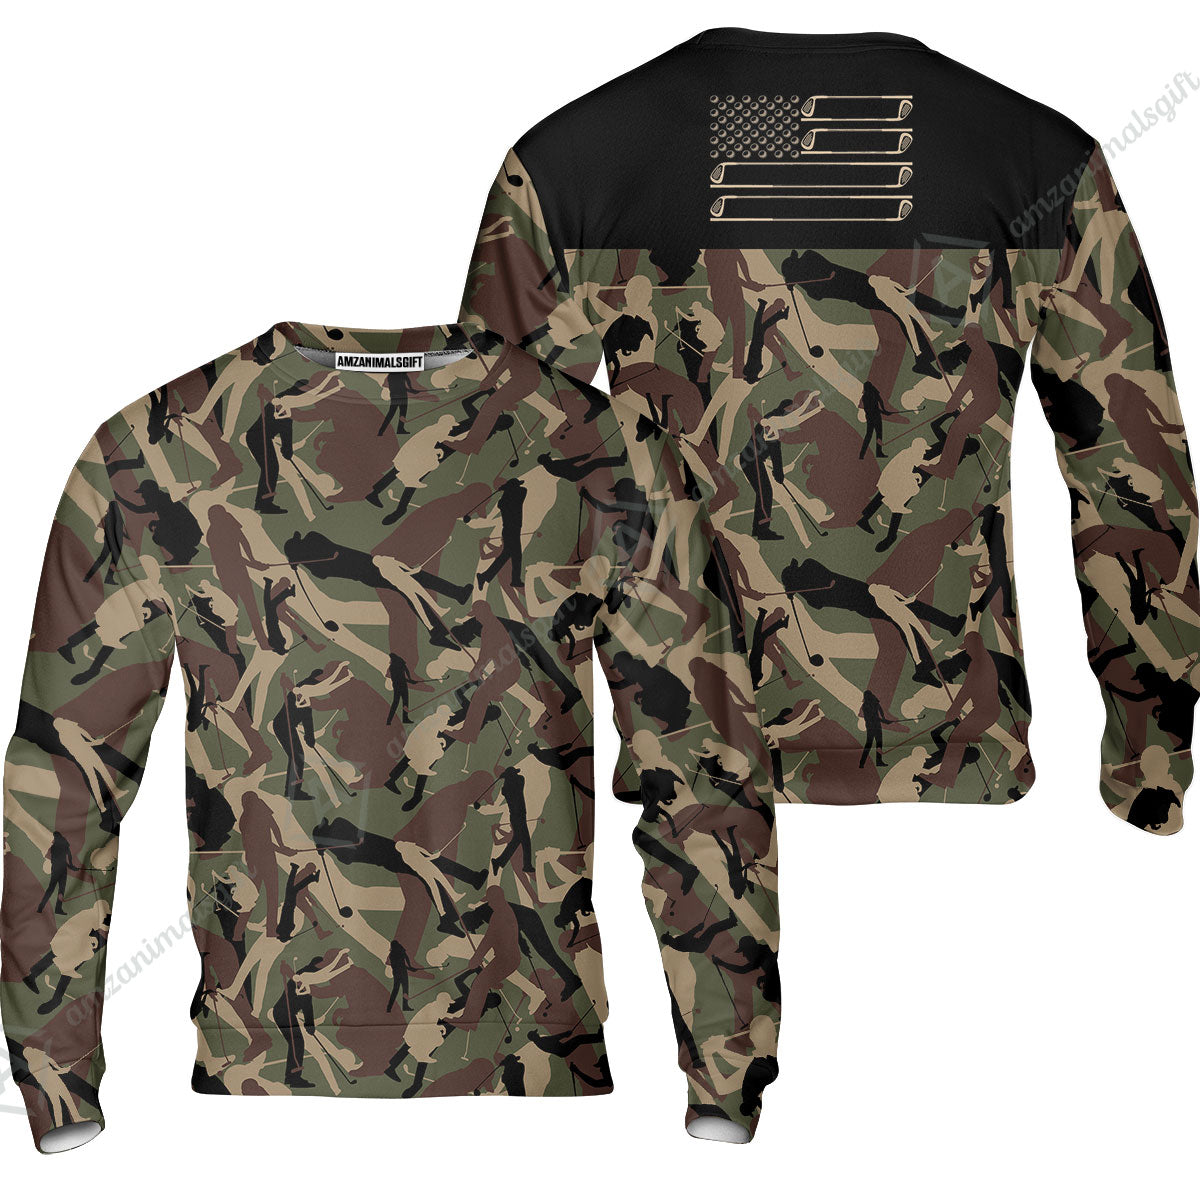 Golf Sweatshirt - Golf Camouflage Pattern Golf Sweatshirt, Military Golfing Sweatshirt, Camo Golf Shirt